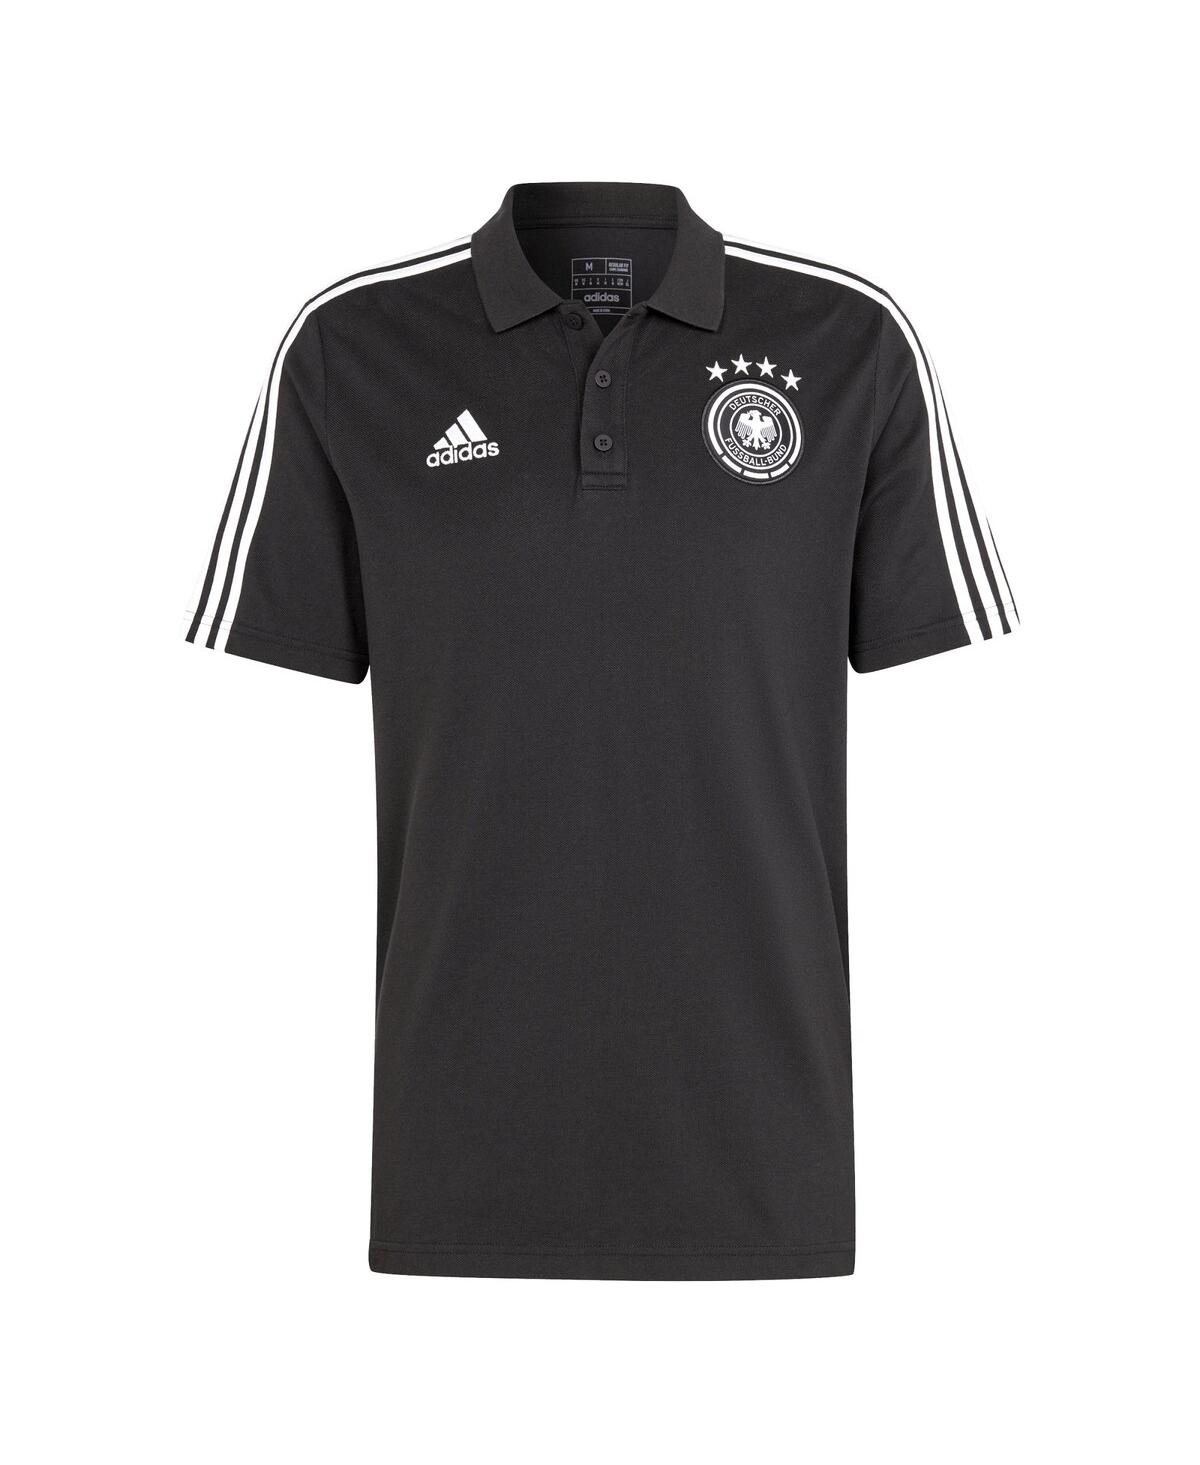 Shop Adidas Originals Men's Adidas Black Germany National Team Dna Aeroready Polo Shirt